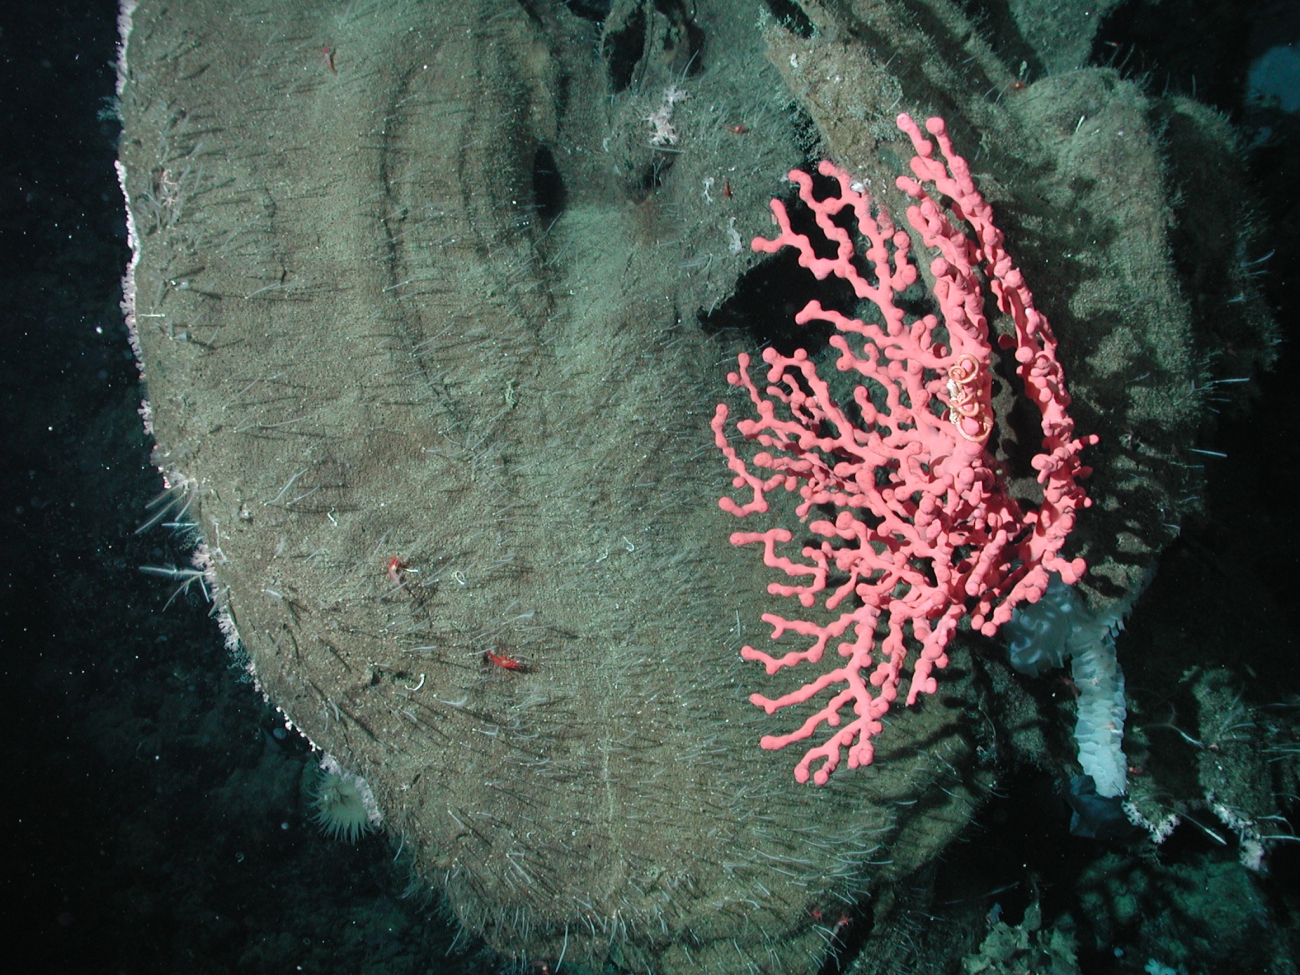 Bubblegum coral (Paragorgia arborea) growing on a large sponge